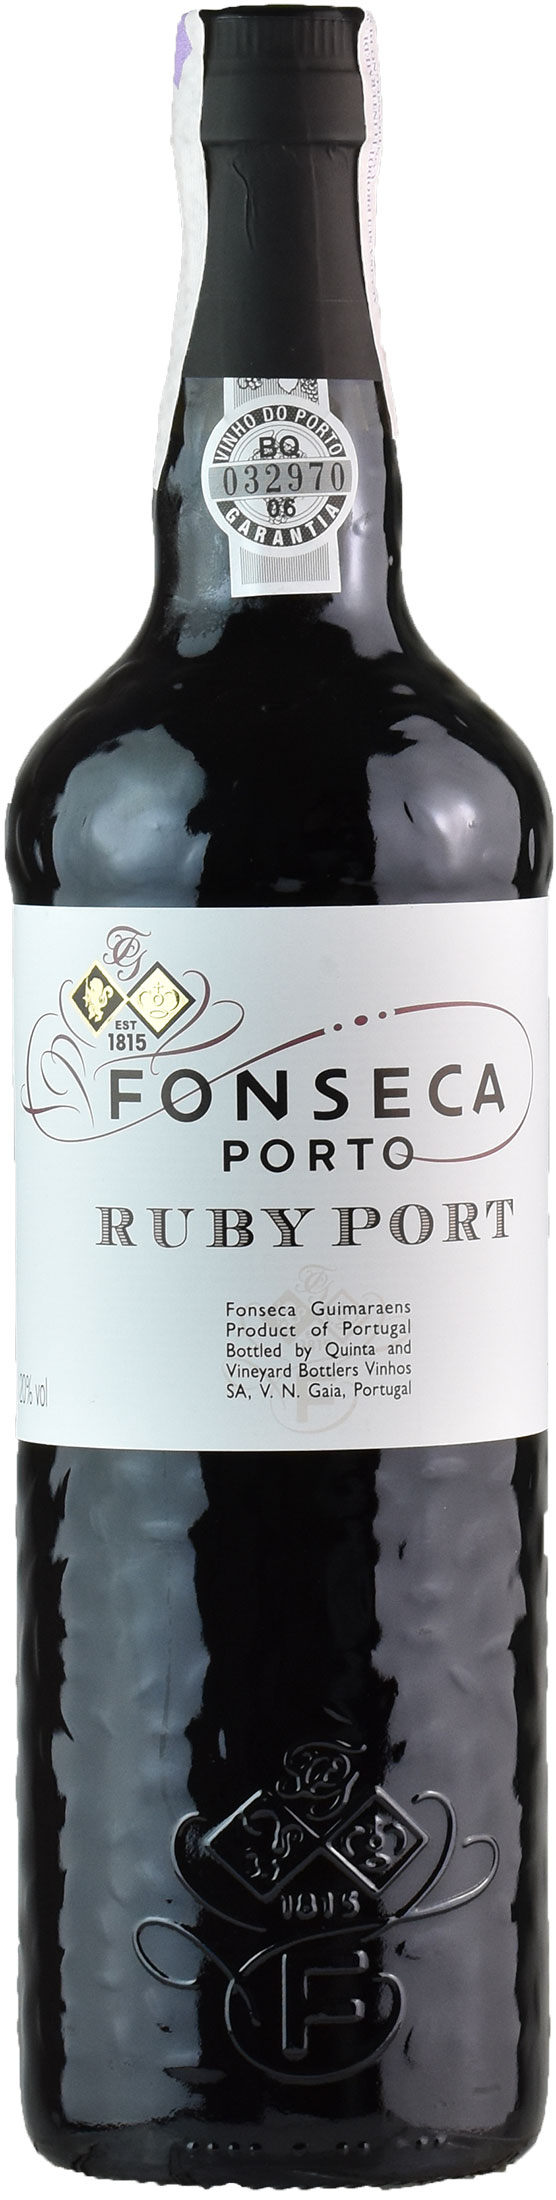 Fonseca Porto Guimaraens Ruby